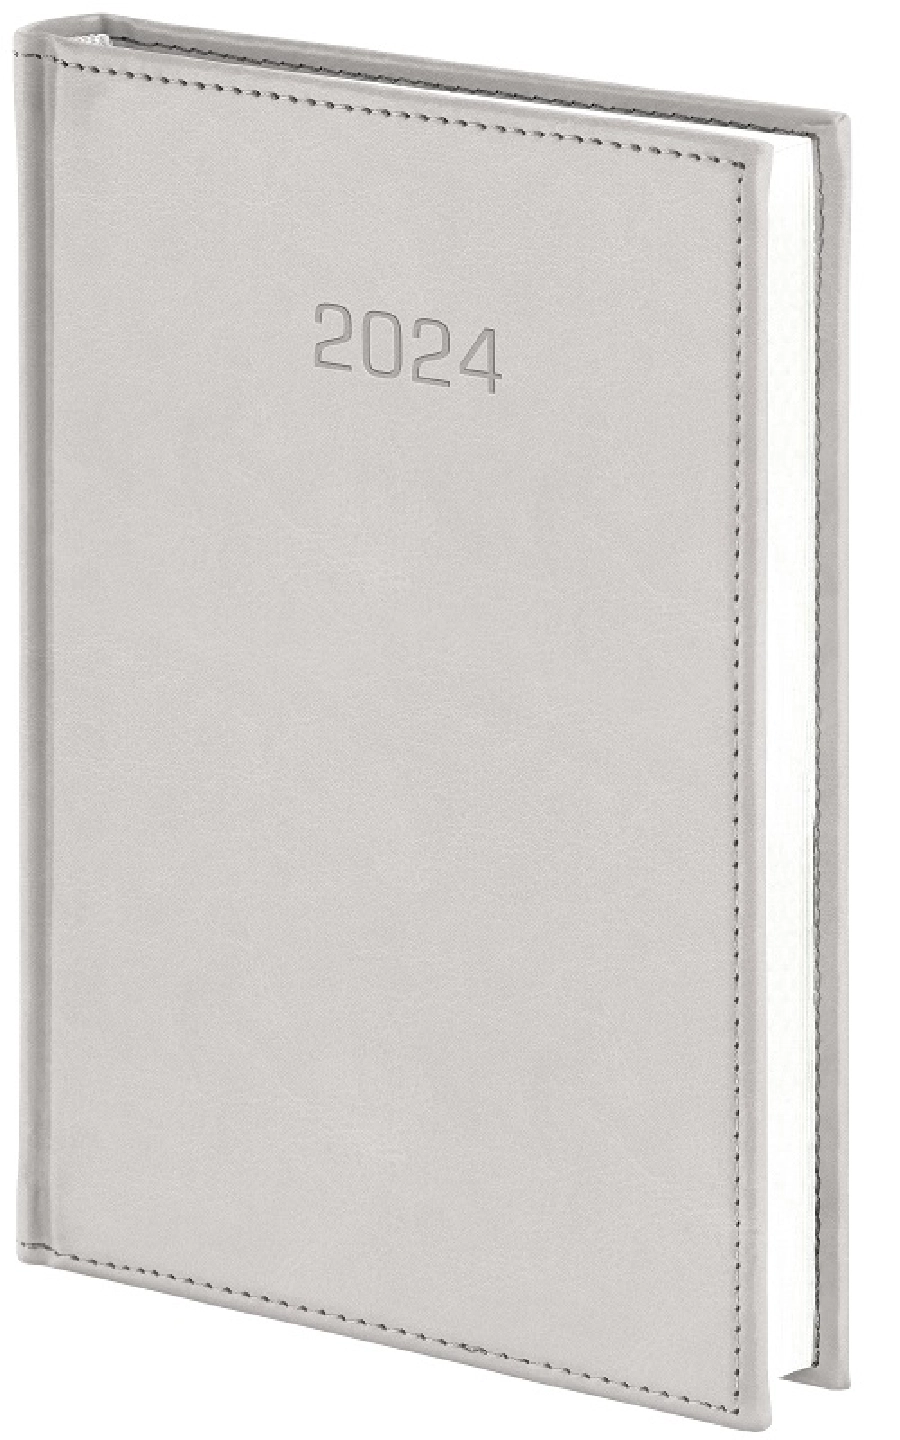 Nebraska kalendarz książkowy 2024 tygodniowy A5 GR-160081 beżowy